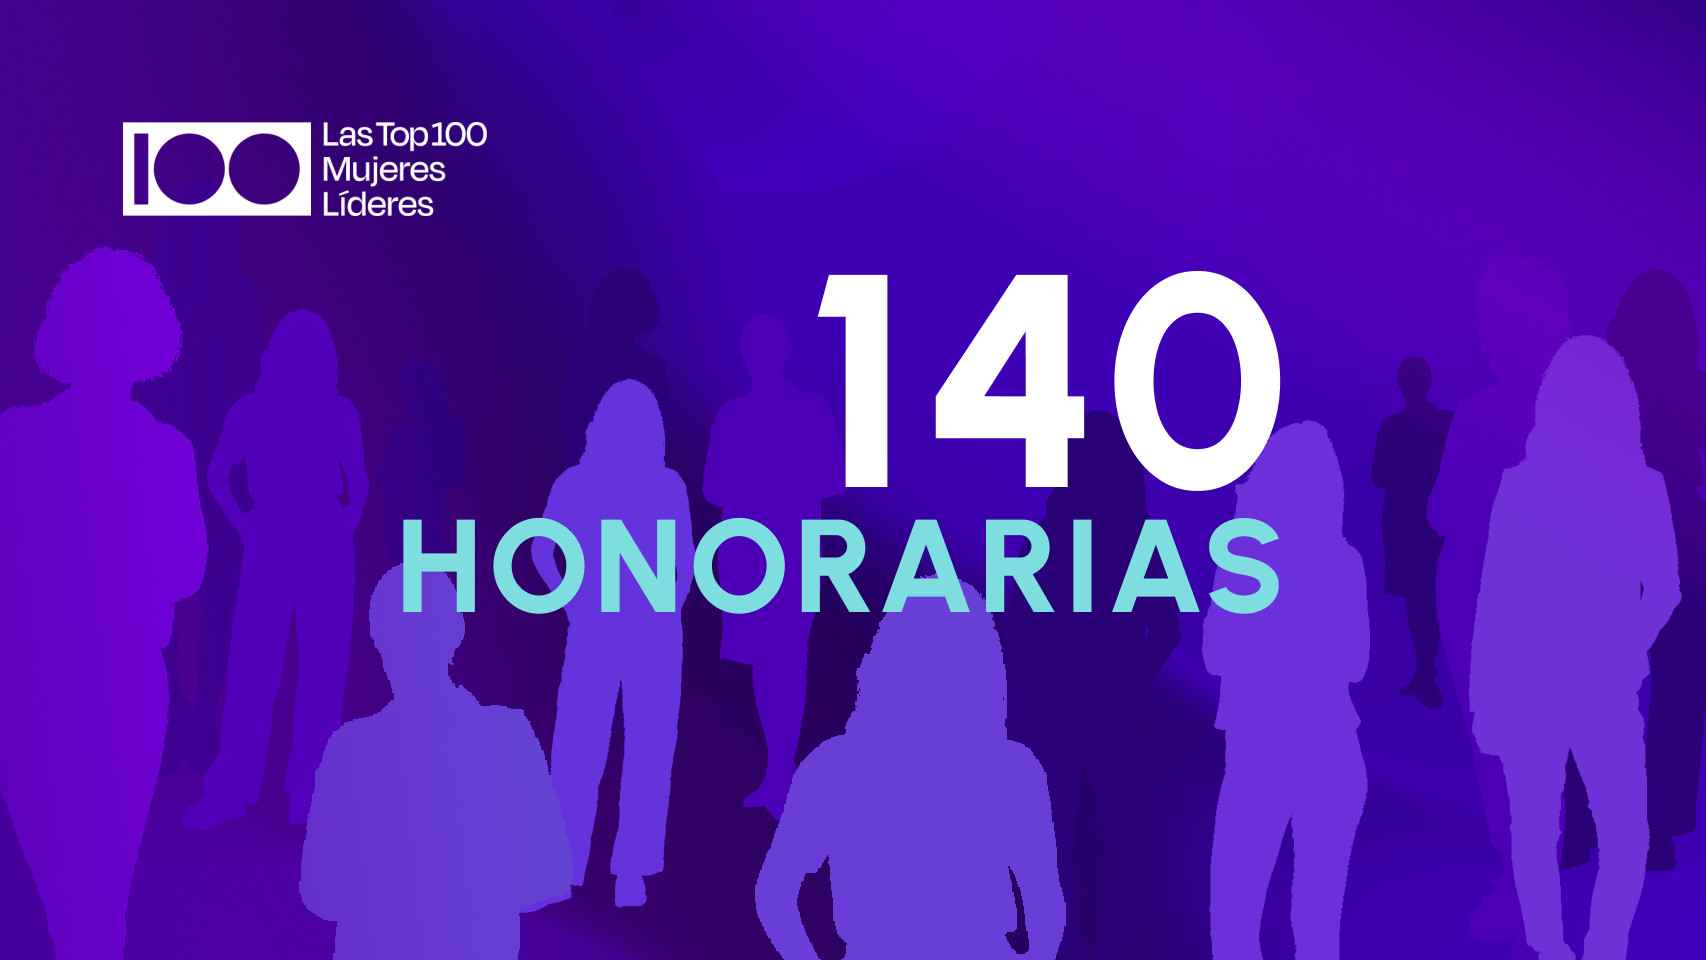 “Las Top 100” homenajearán en su 11ª edición a las 140 honorarias que marcan una década de liderazgo femenino